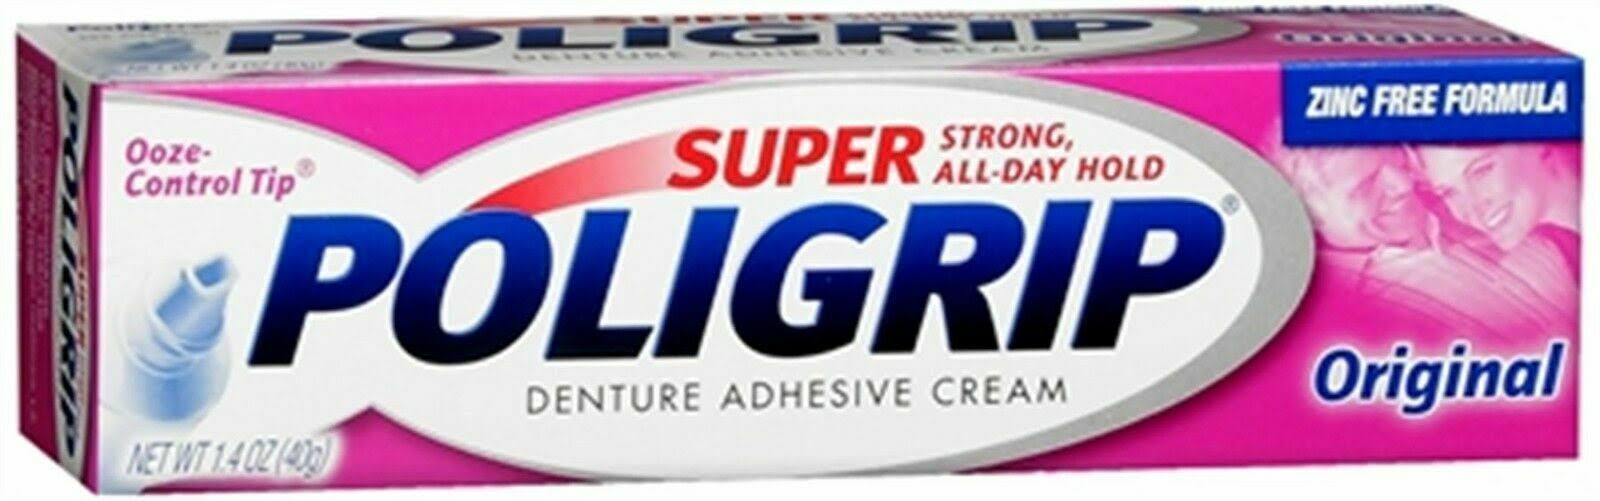 Super PoliGrip Denture Adhesive Cream - Original, 1.4oz